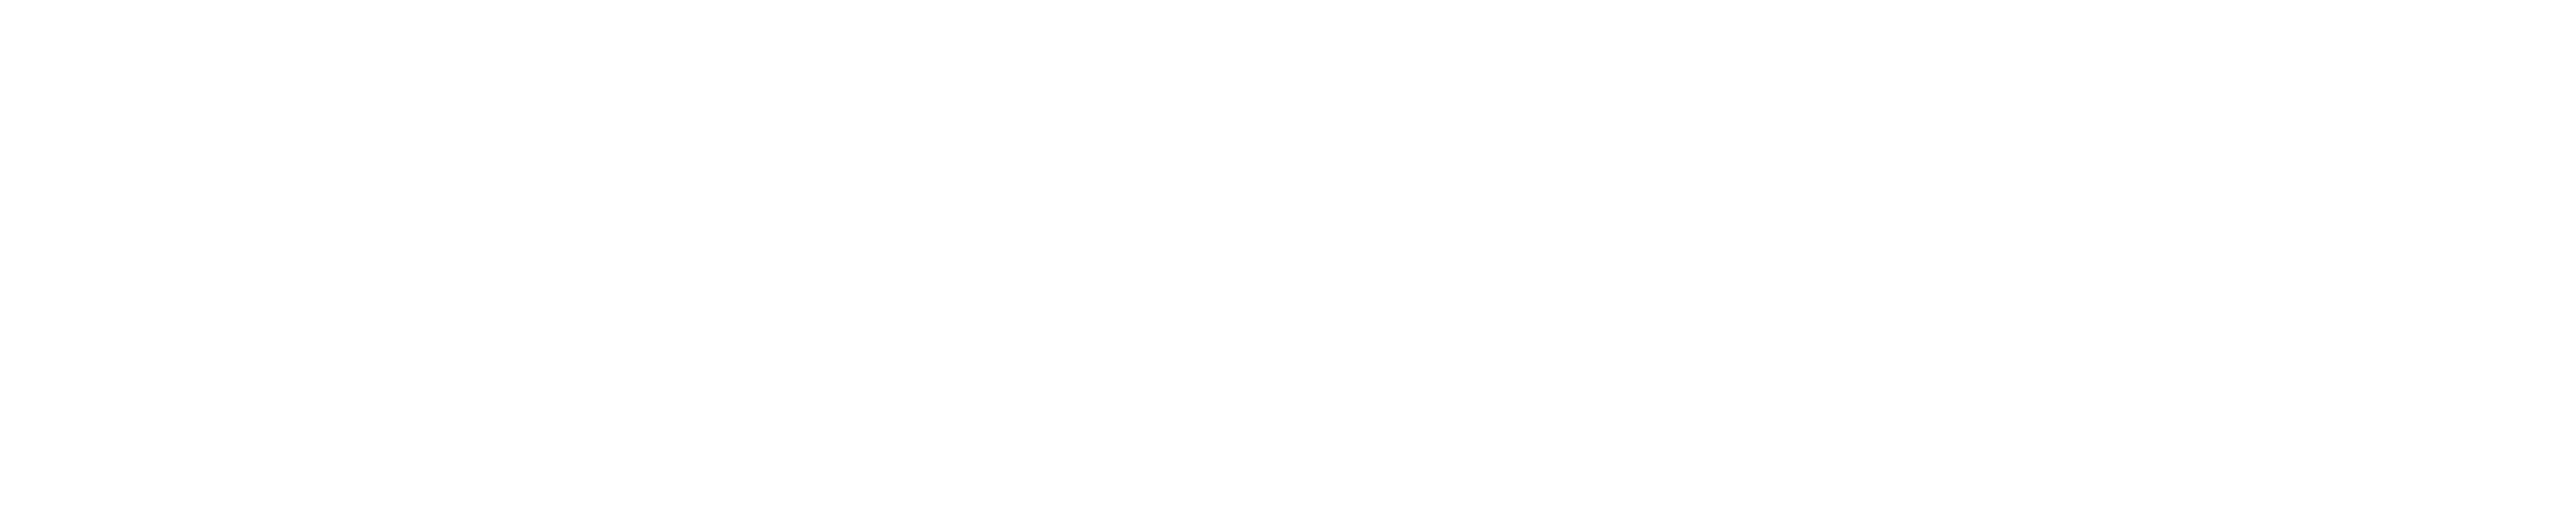 DeepAffex Logo